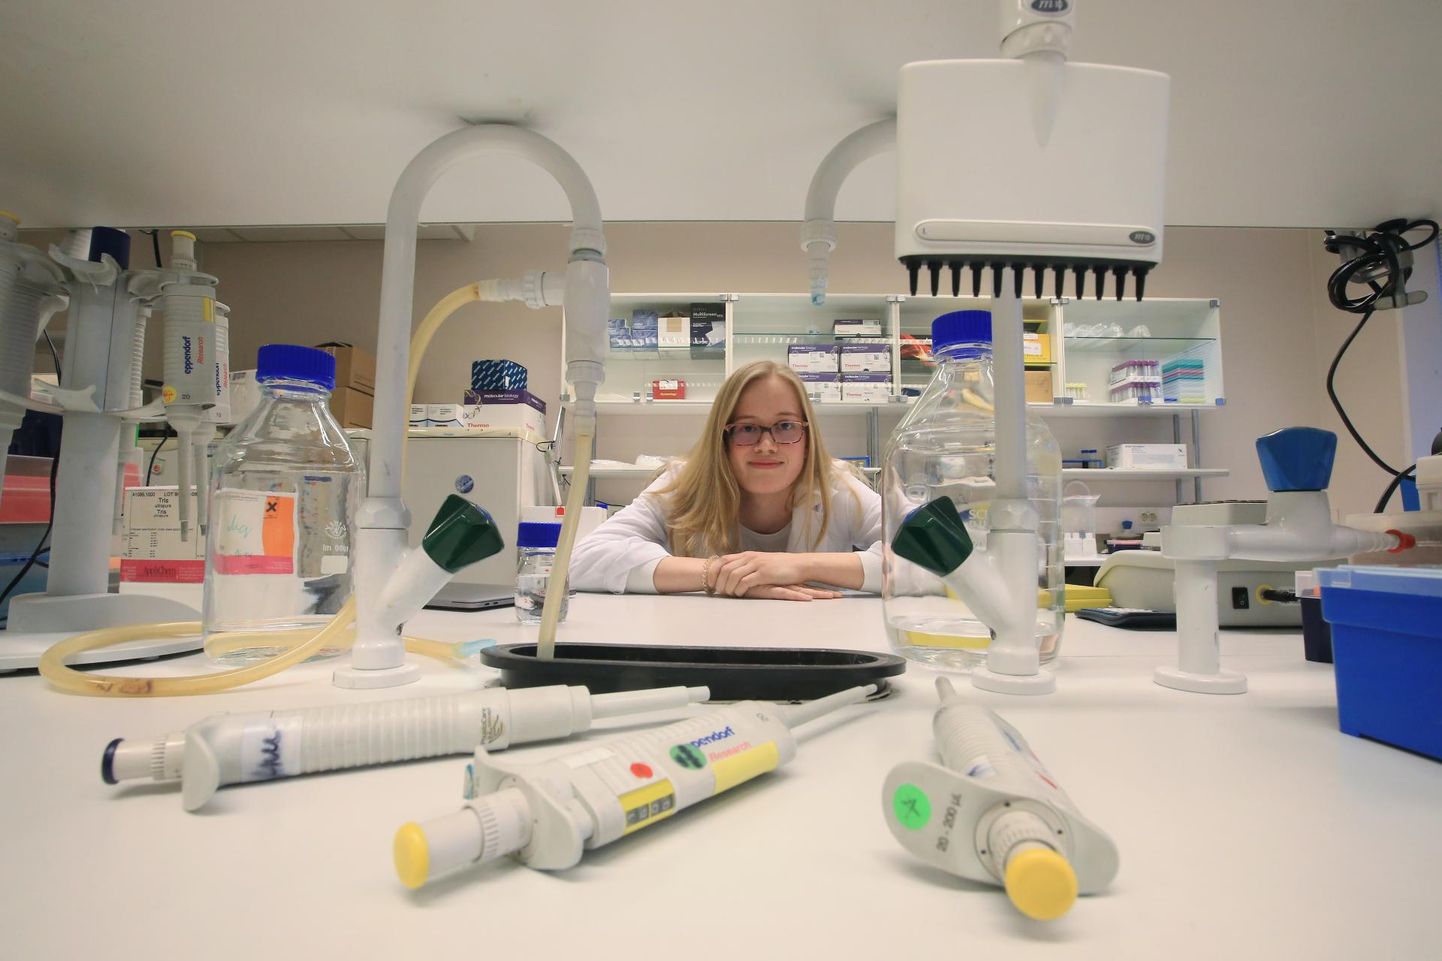 Tallinna reaalkooli 11. klassi õpilane Anna Pauliina Rumm käib iga kuu Tartus Biomeedikumi laboris teadustööd tegemas. Tema uurimus keskendub vananemisega kaasnevatele muutustele immuunsüsteemis.